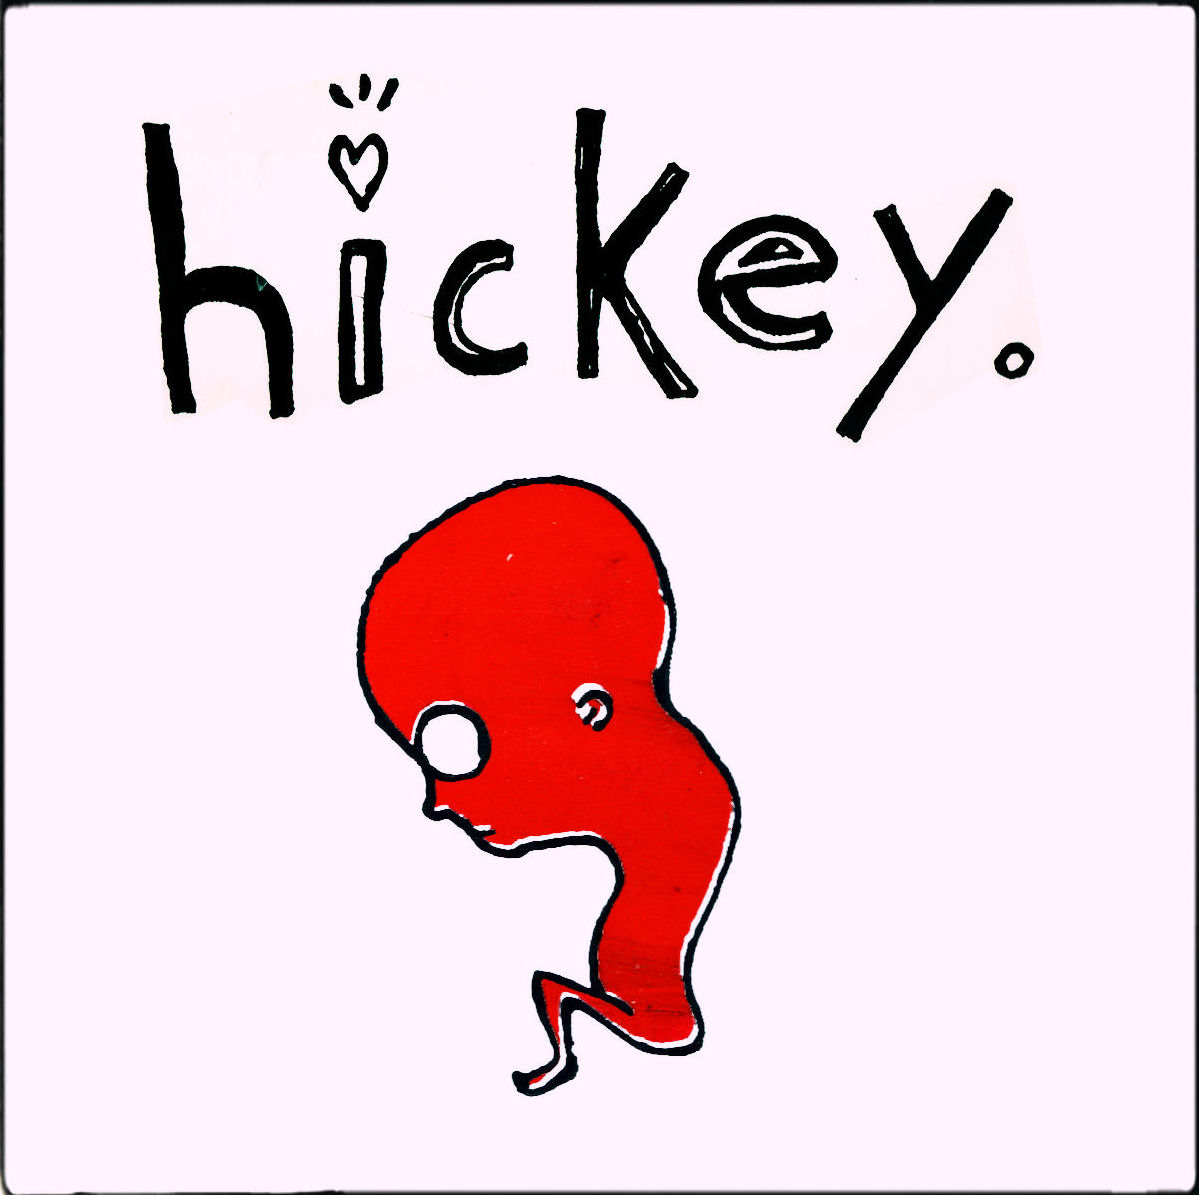 Critical essay on the adventure of huckleberry finn